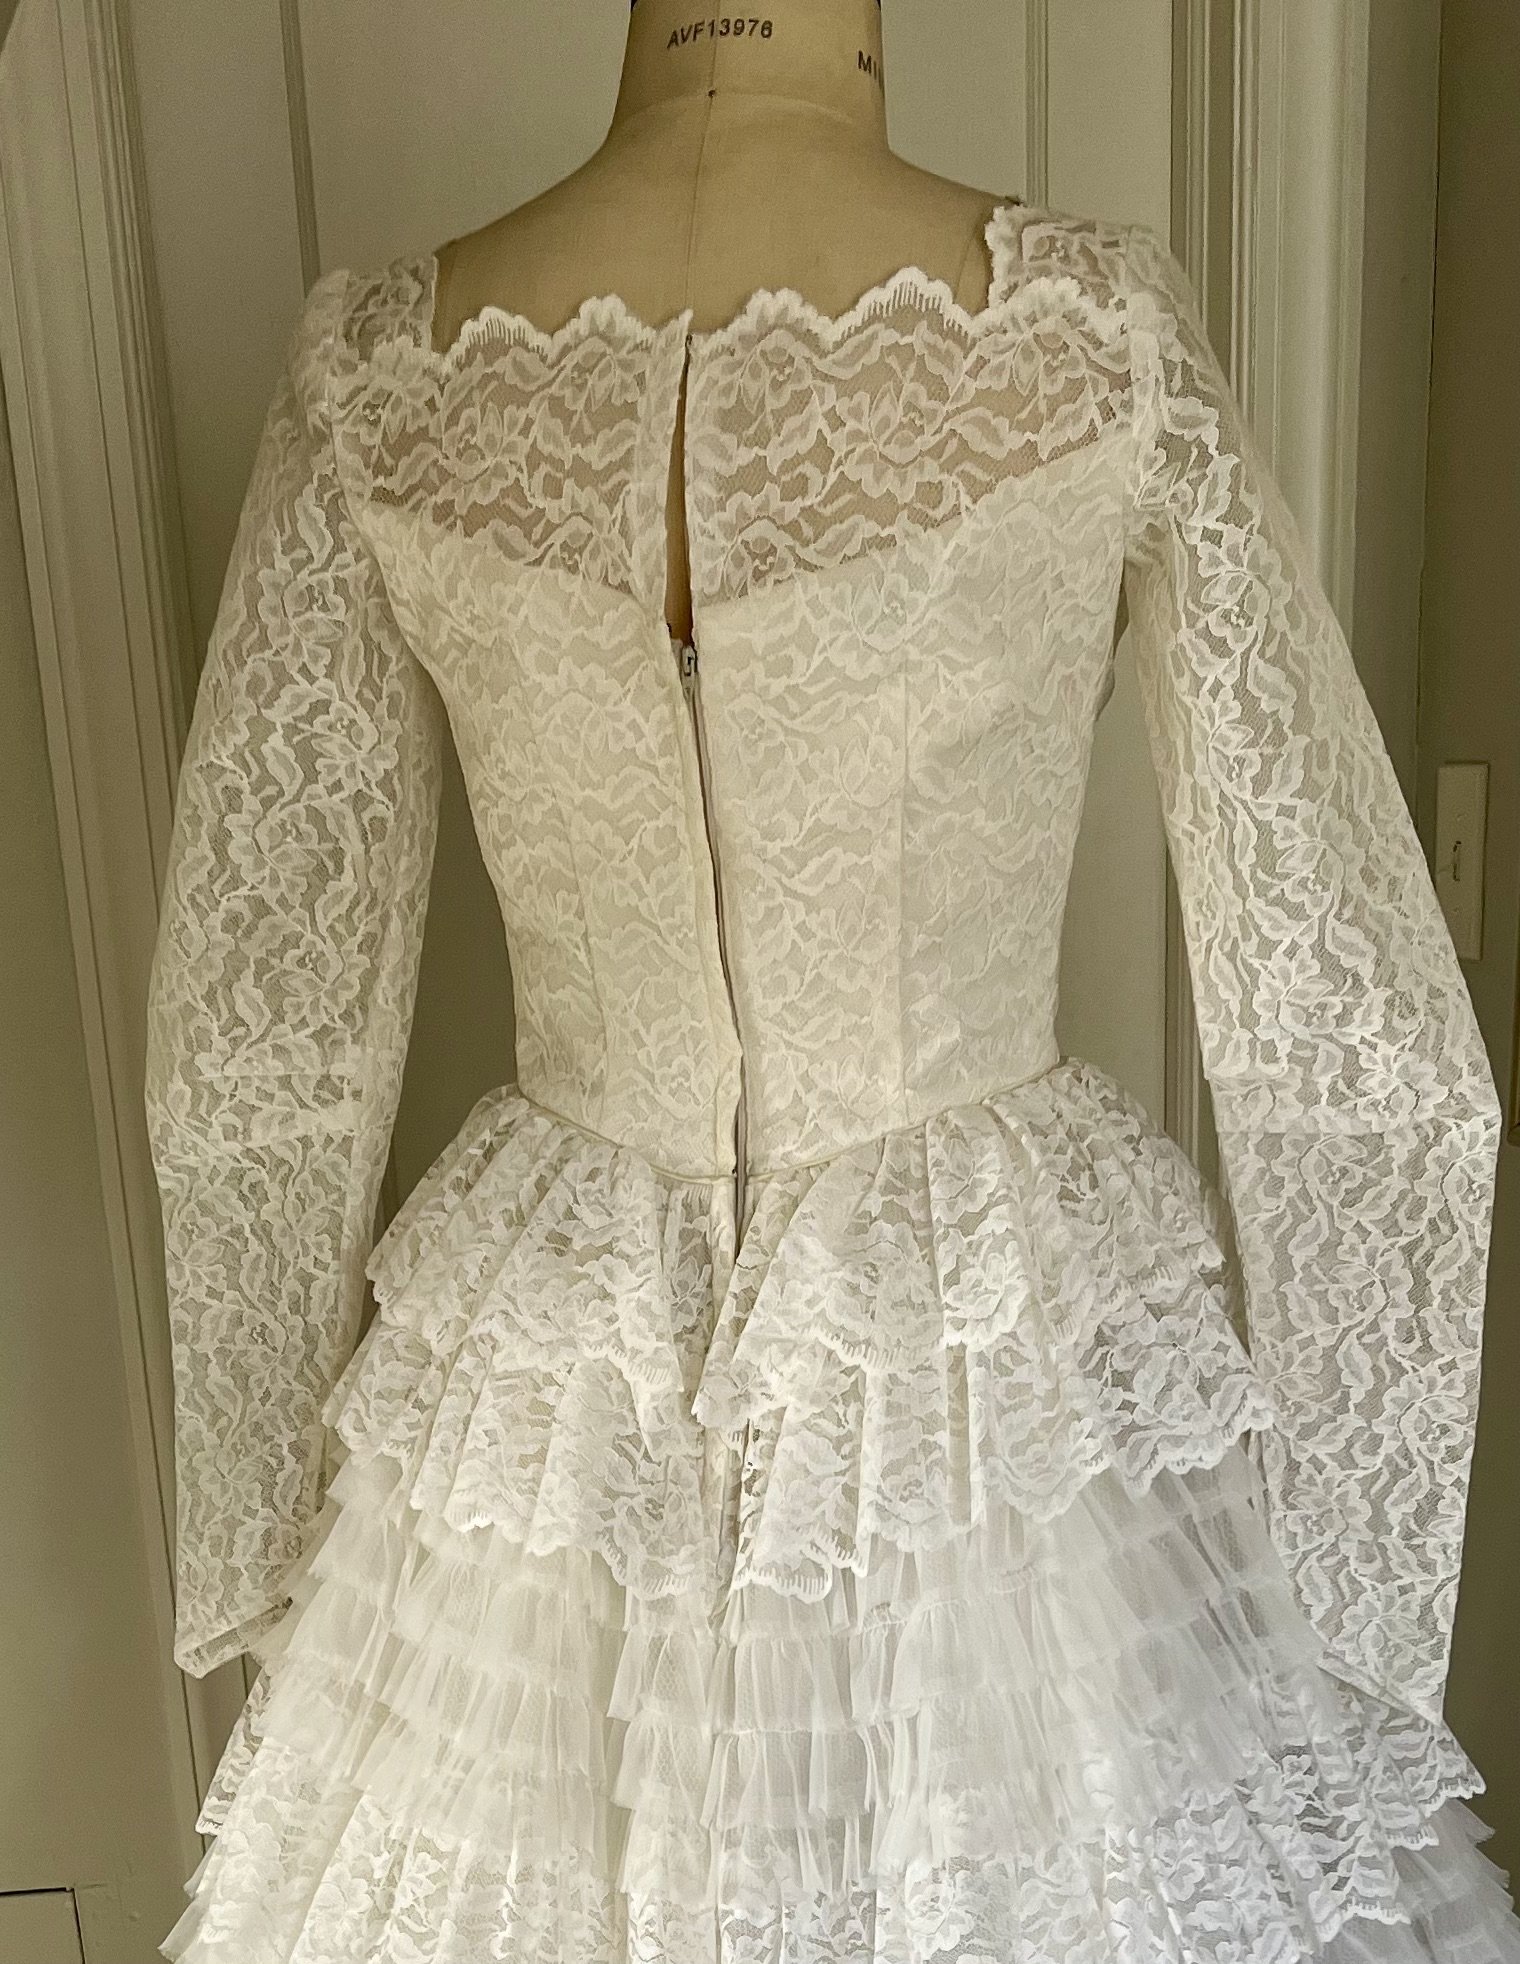 old-fashion wedding dress.jpg